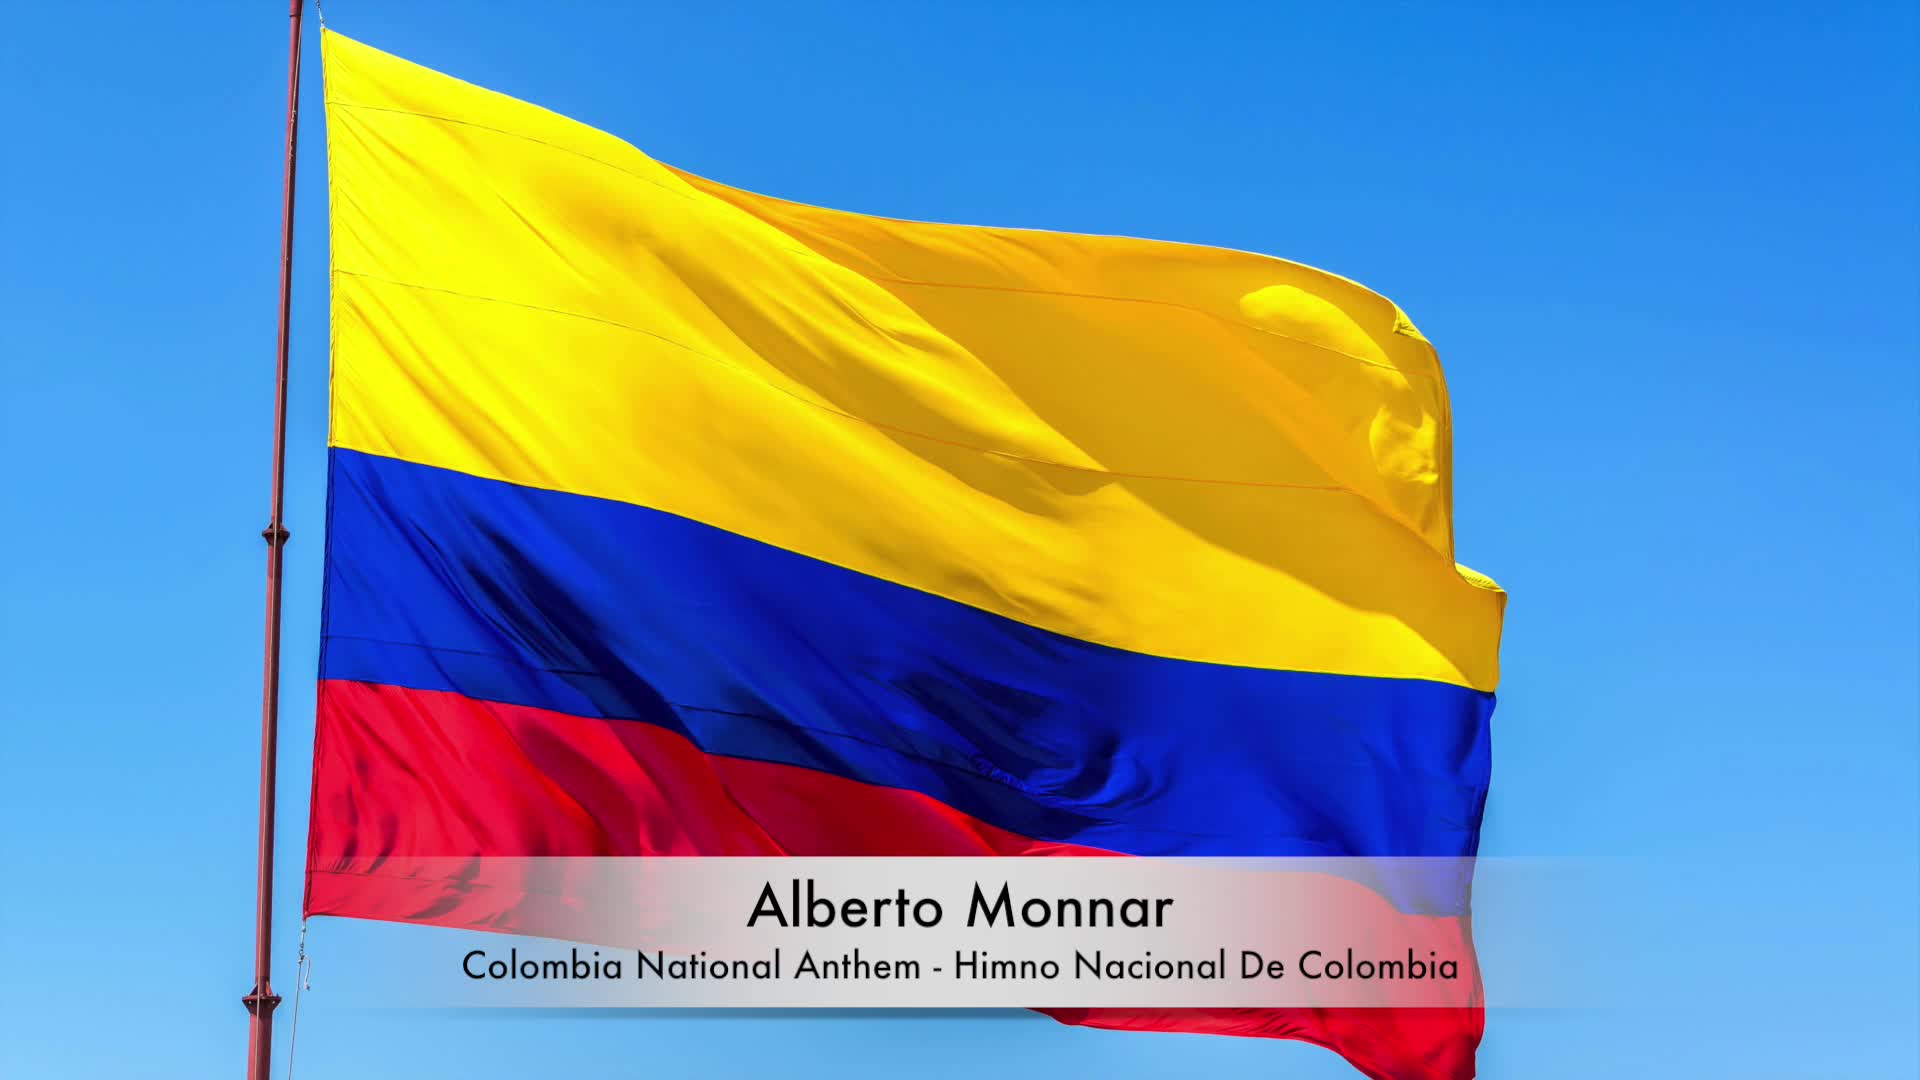 Alberto Monnar - Colombia National Anthem / Himno Nacional De Colombia (Piano)